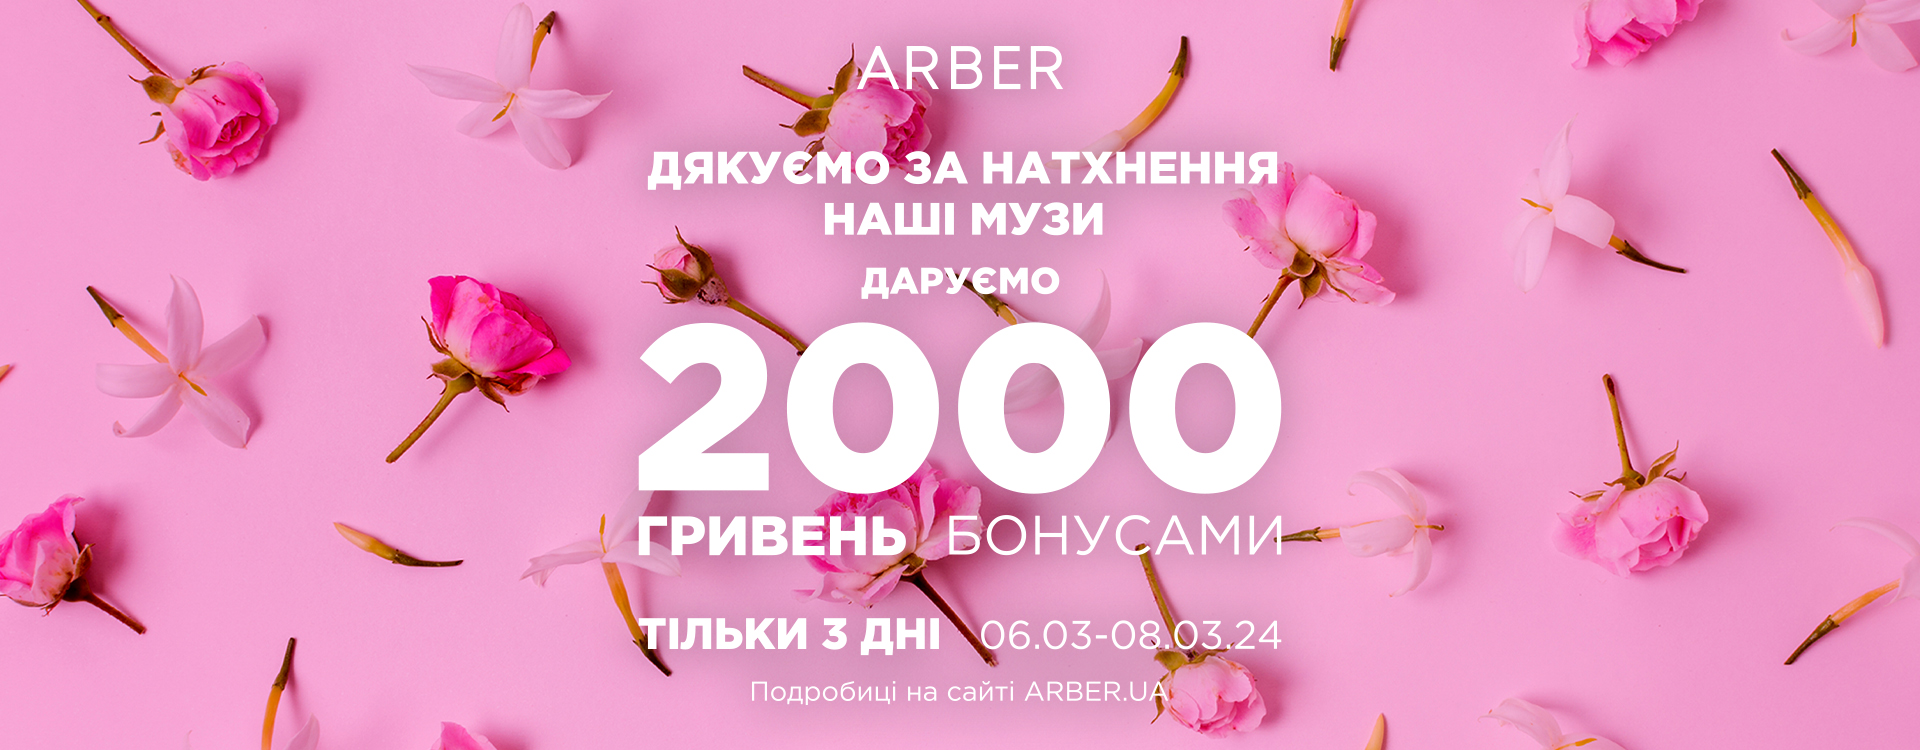 ARBER дарує 2000 грн бонусами